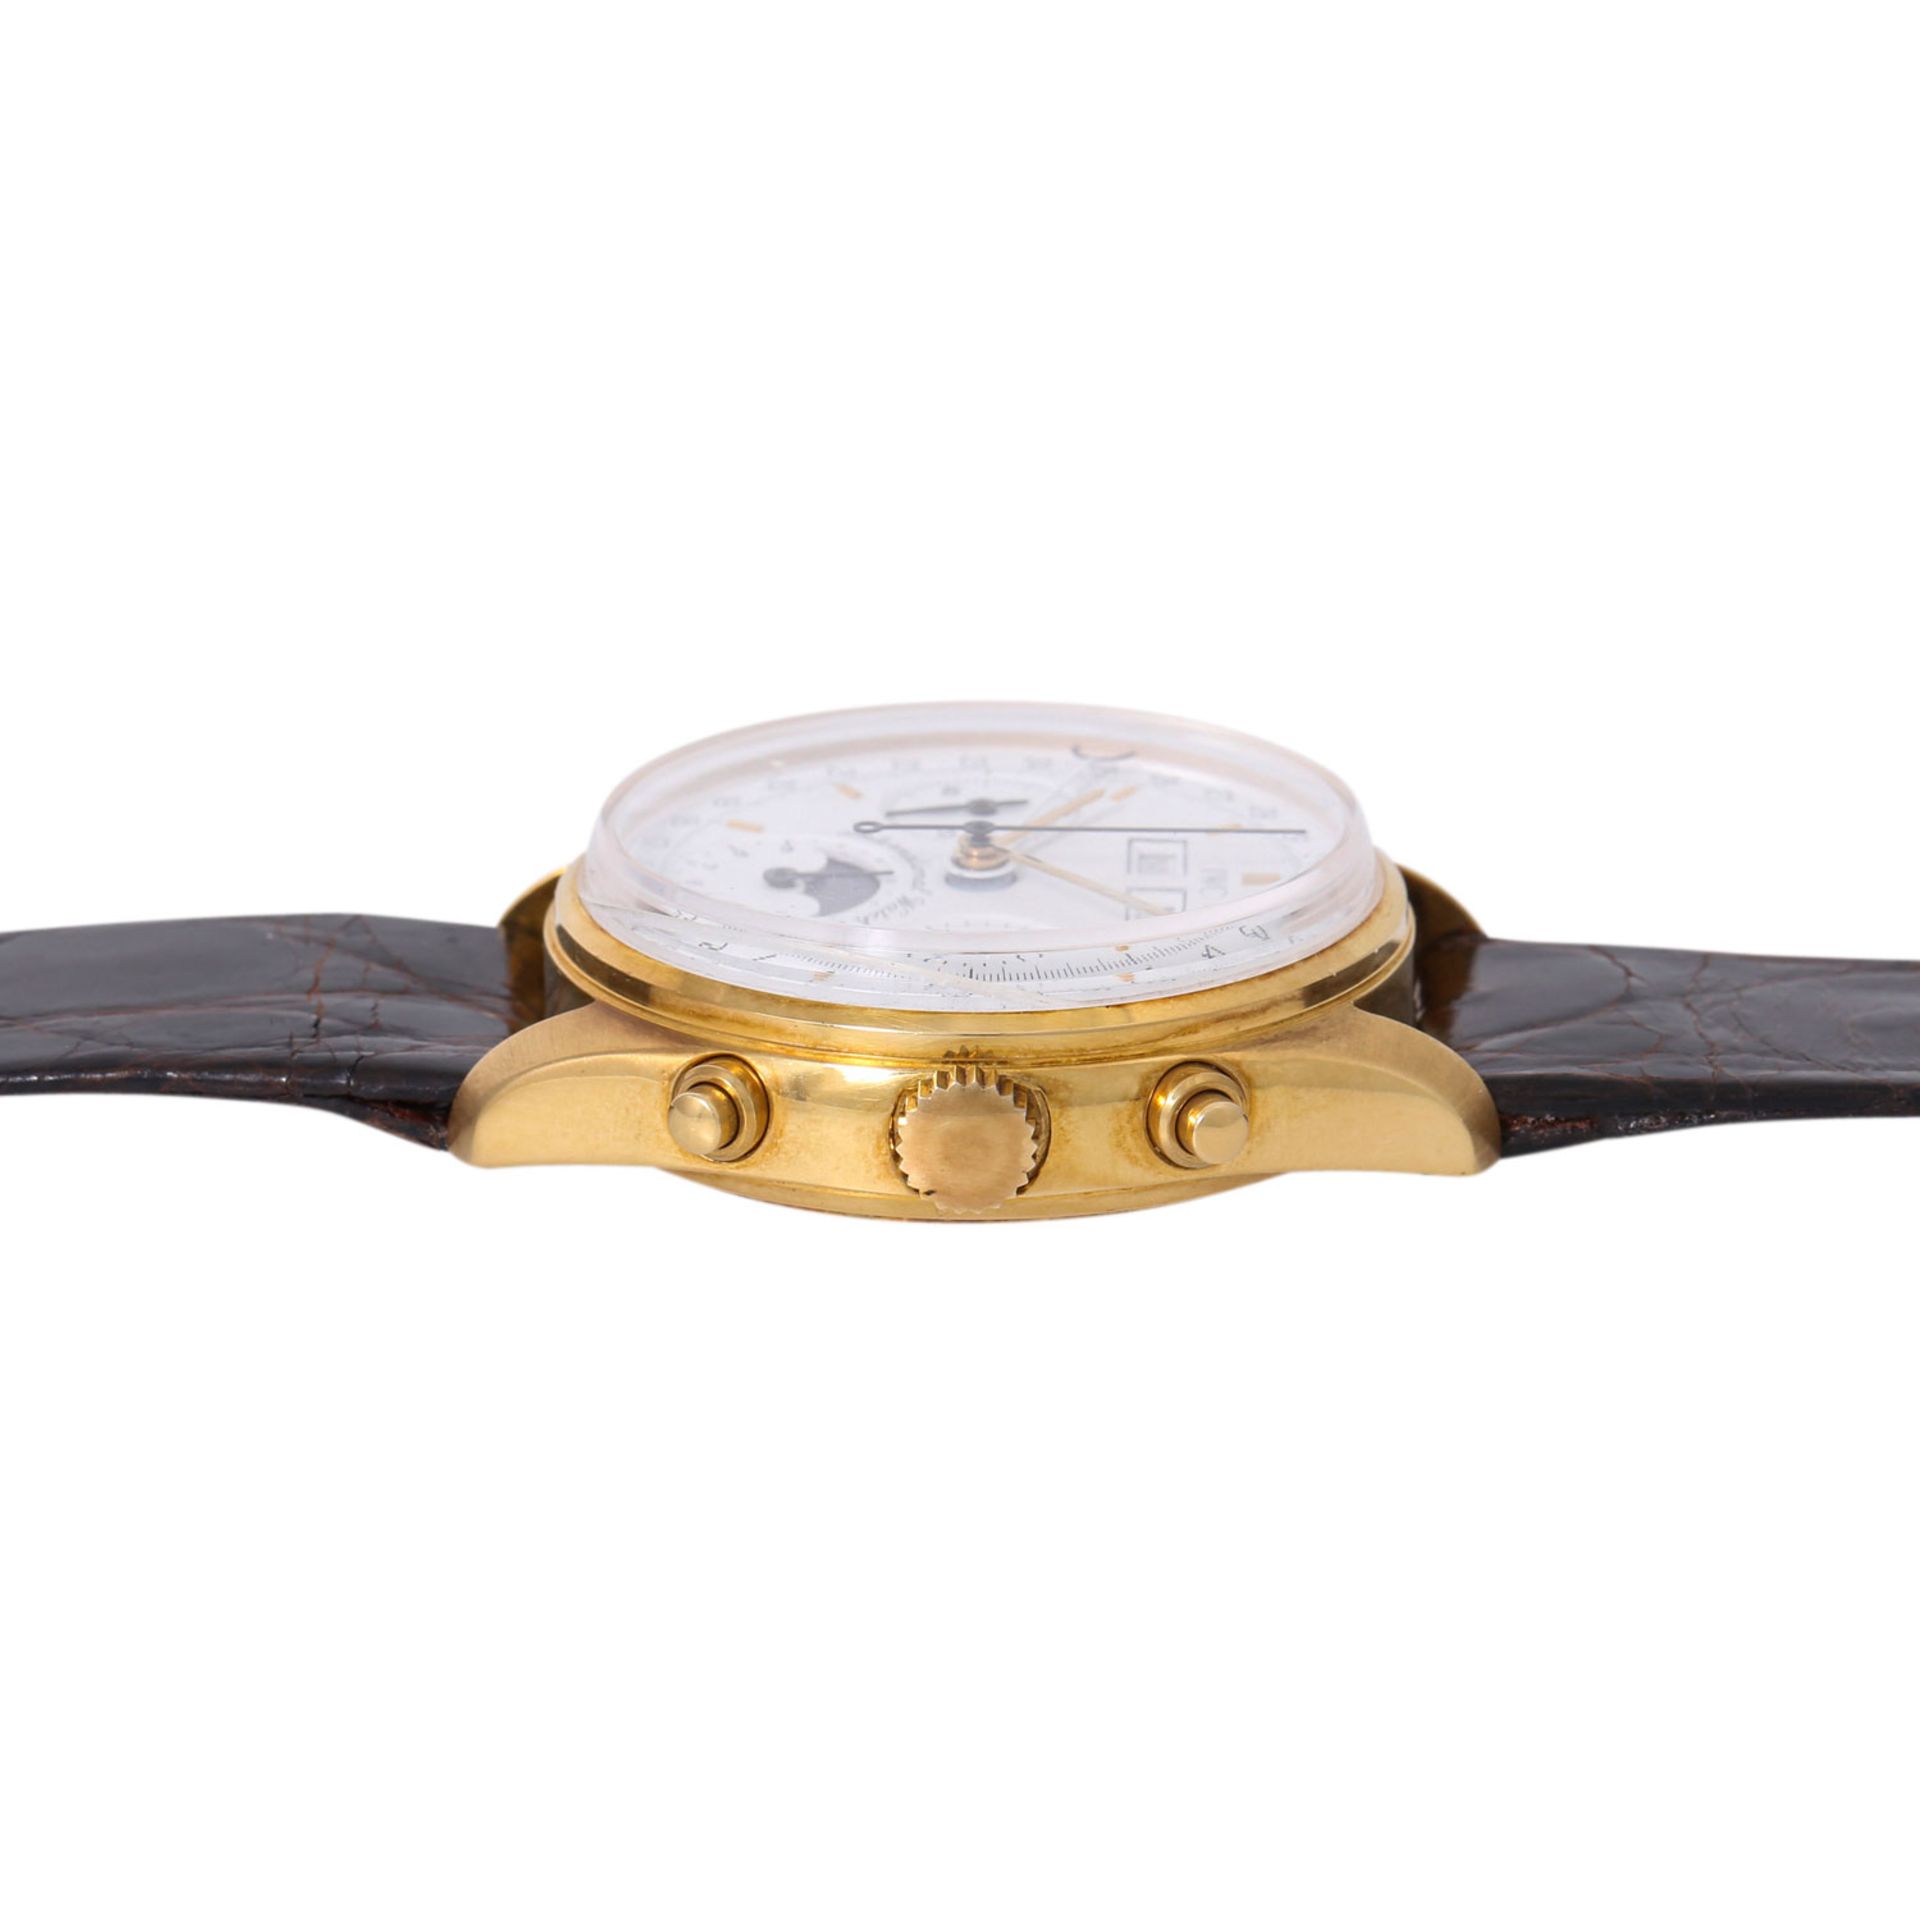 IWC sehr seltener Vollkalender Chronograph Vintage Herren Armbanduhr, Ref. 3710. NOS. Limitiert 150 - Bild 3 aus 8